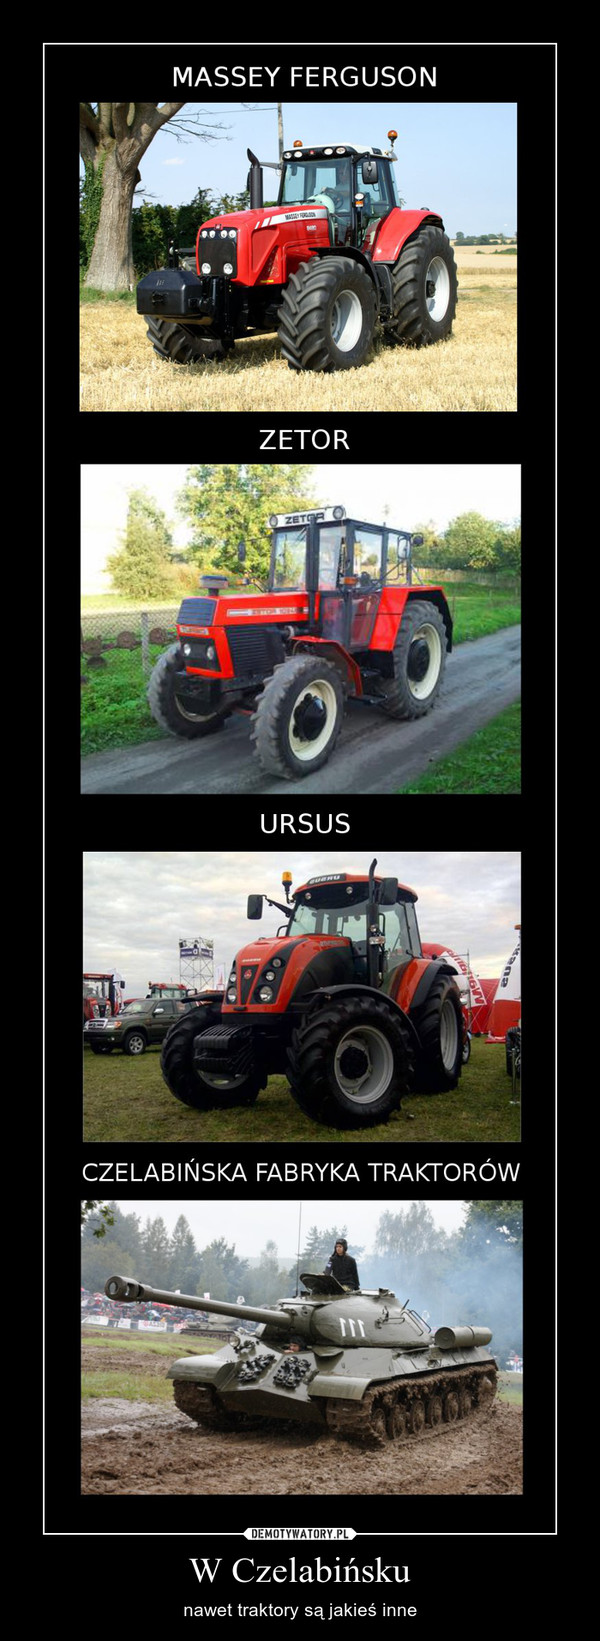 W Czelabińsku – nawet traktory są jakieś inne 